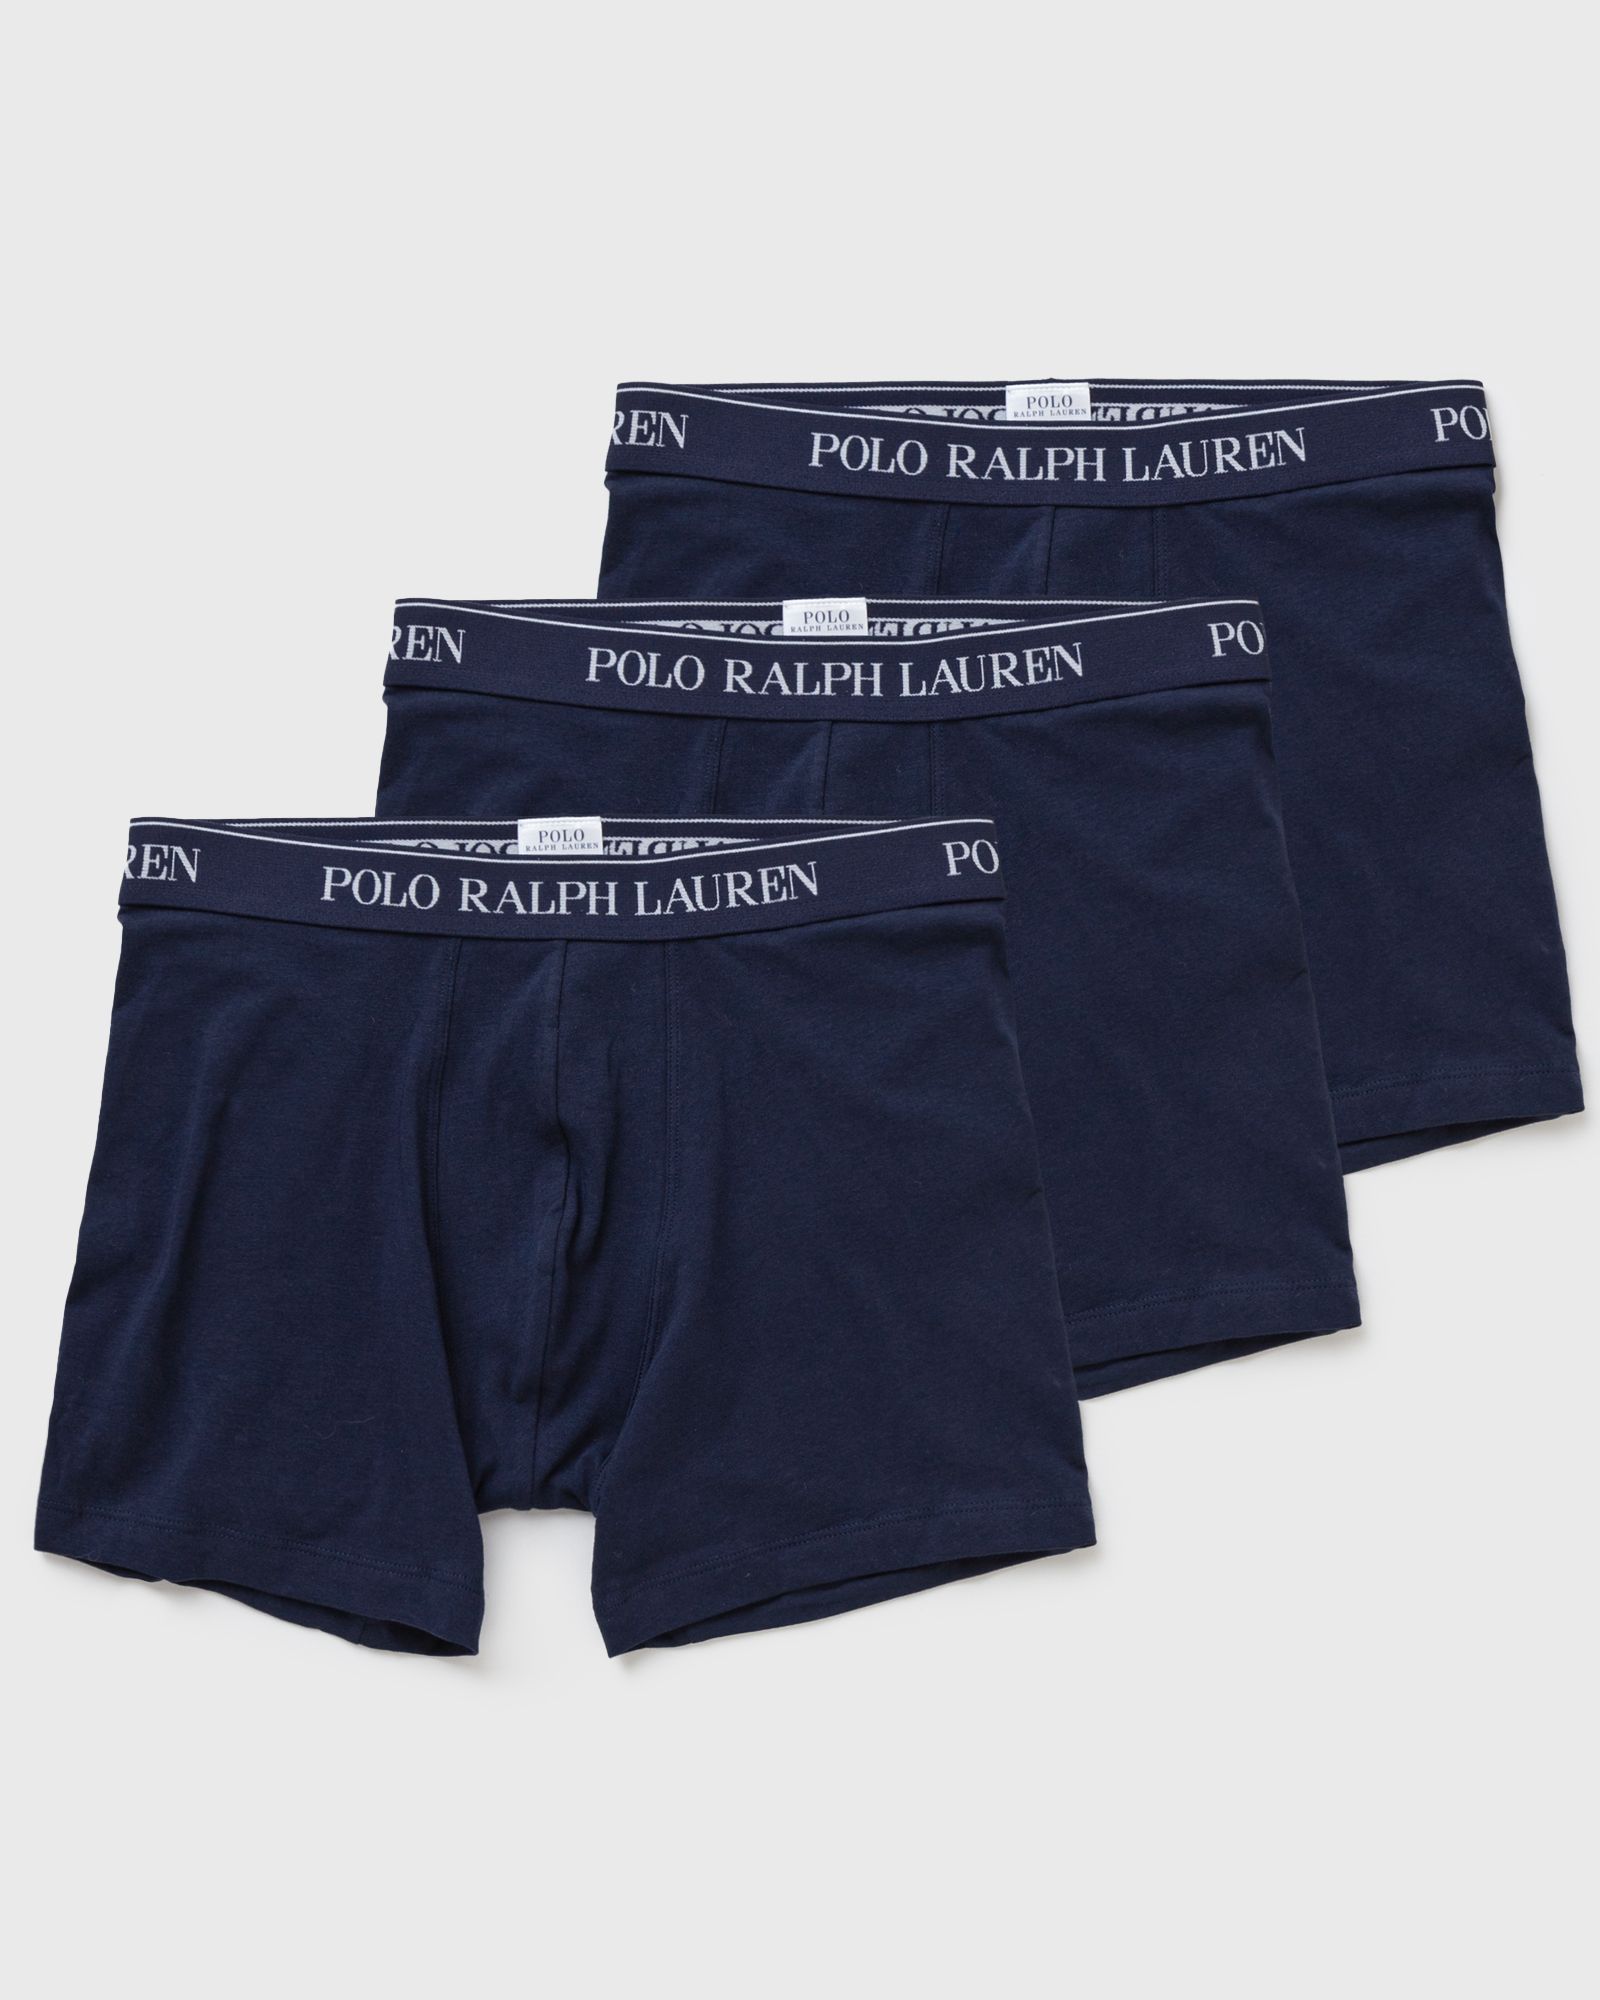 polo ralph lauren boxer brief 3-pack men boxers & briefs